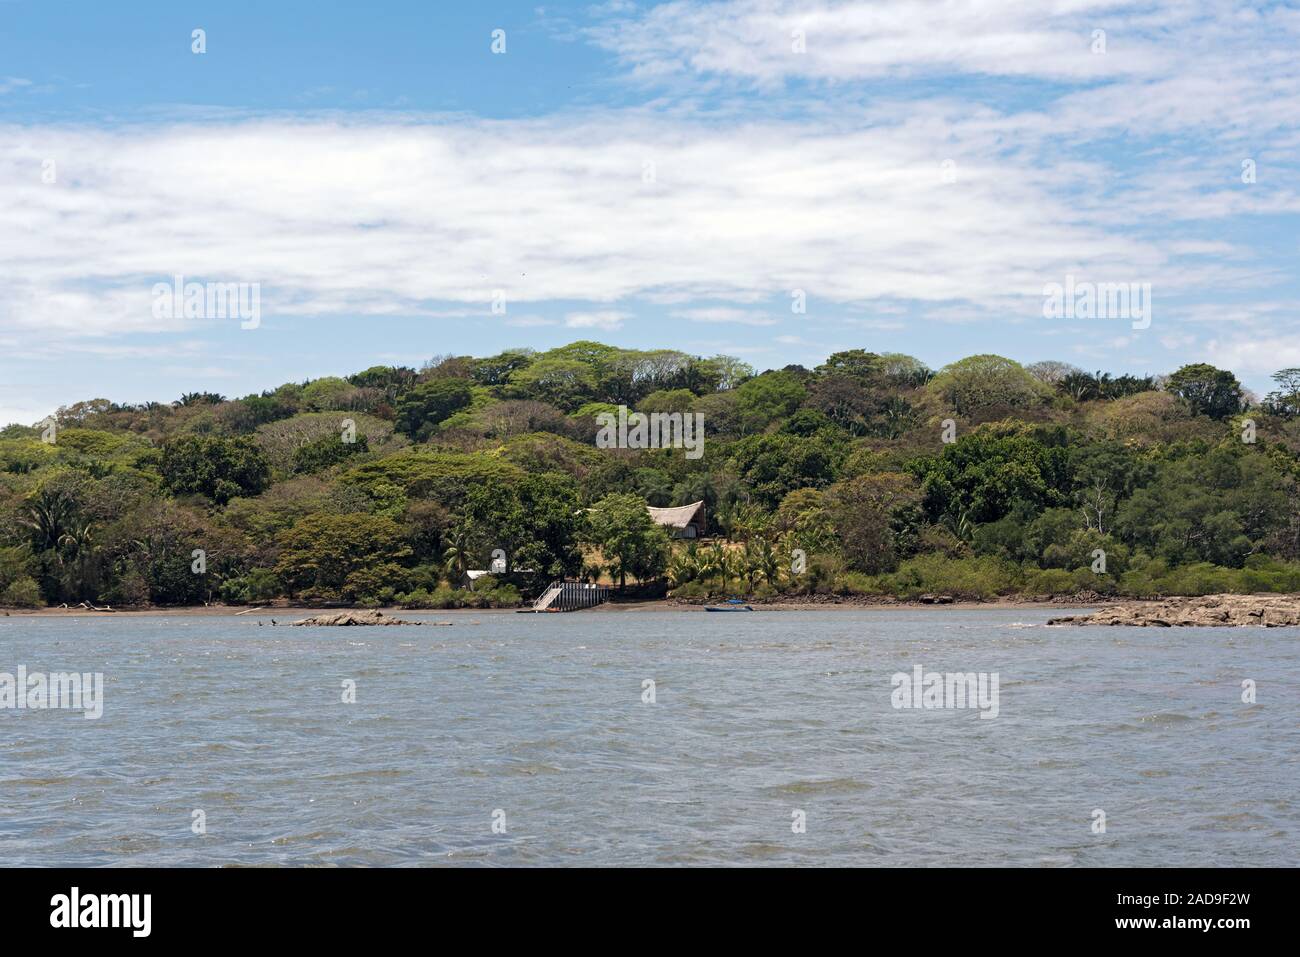 Inseln in der Bahia de los Muertos, der Mündung des Río Platanal, Panamá Foto de stock